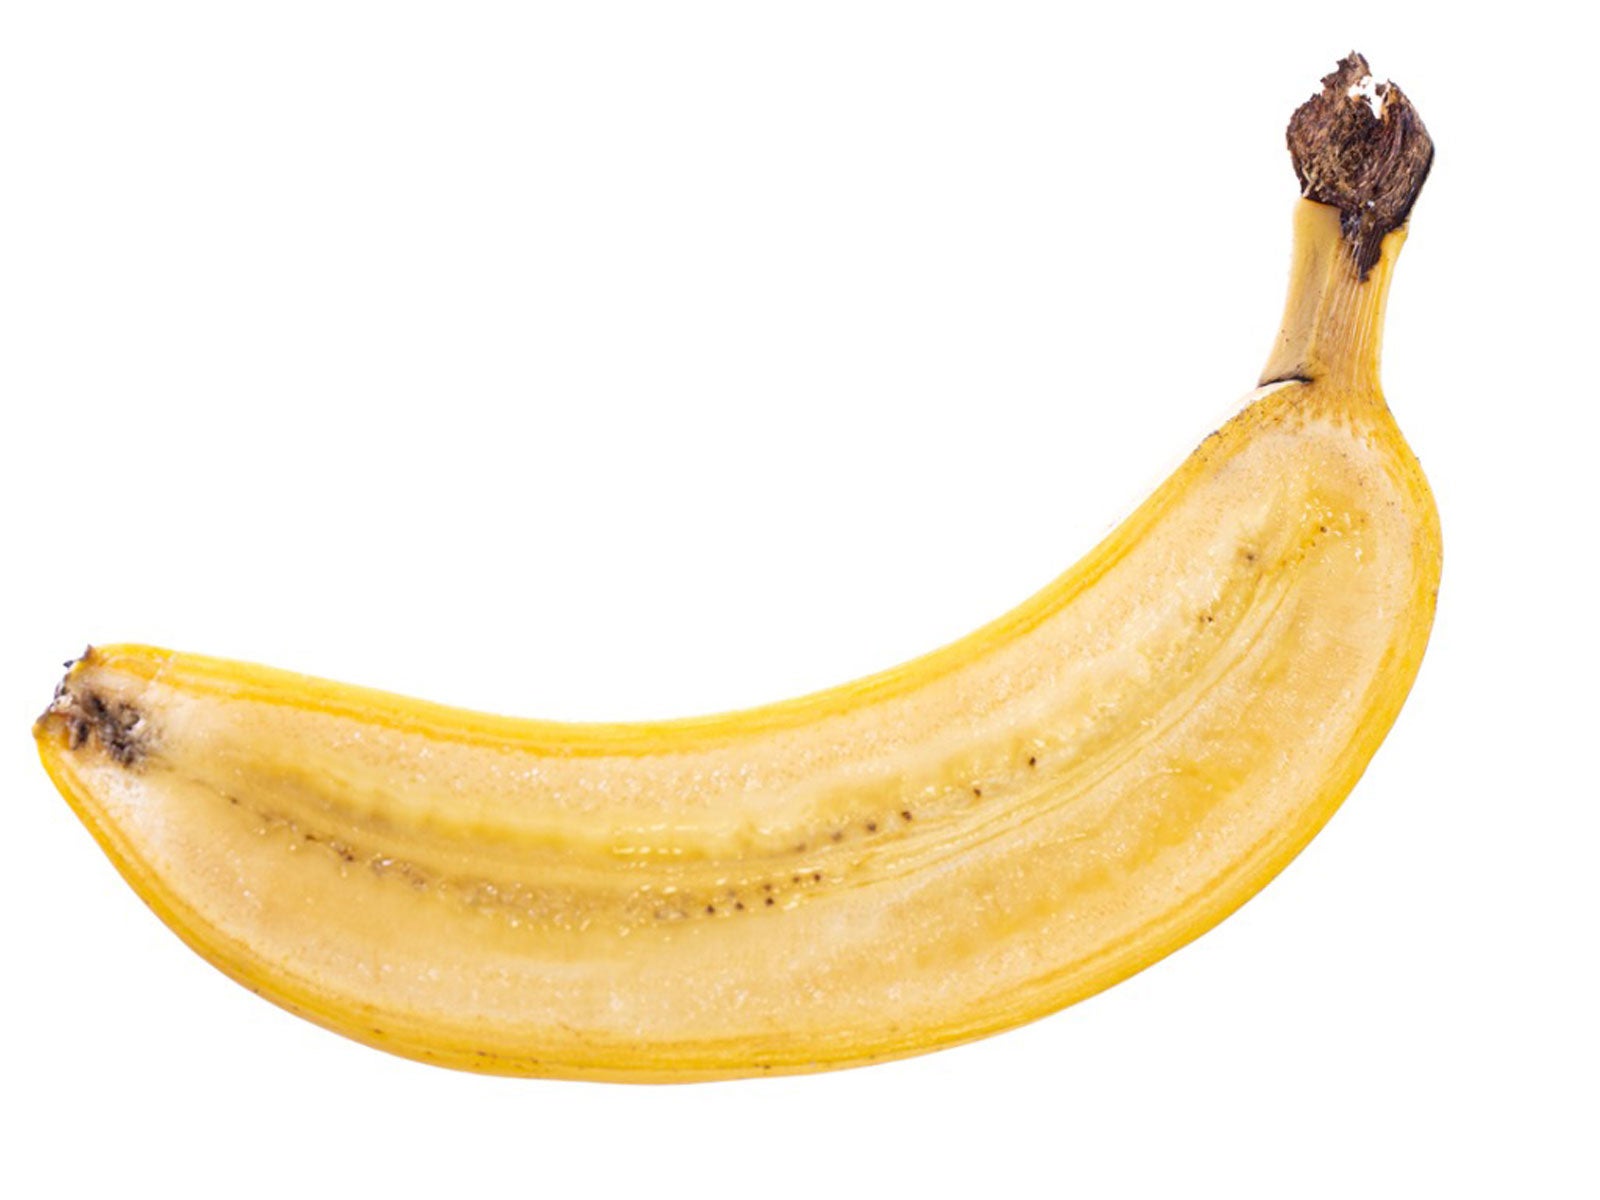 Arana del banano